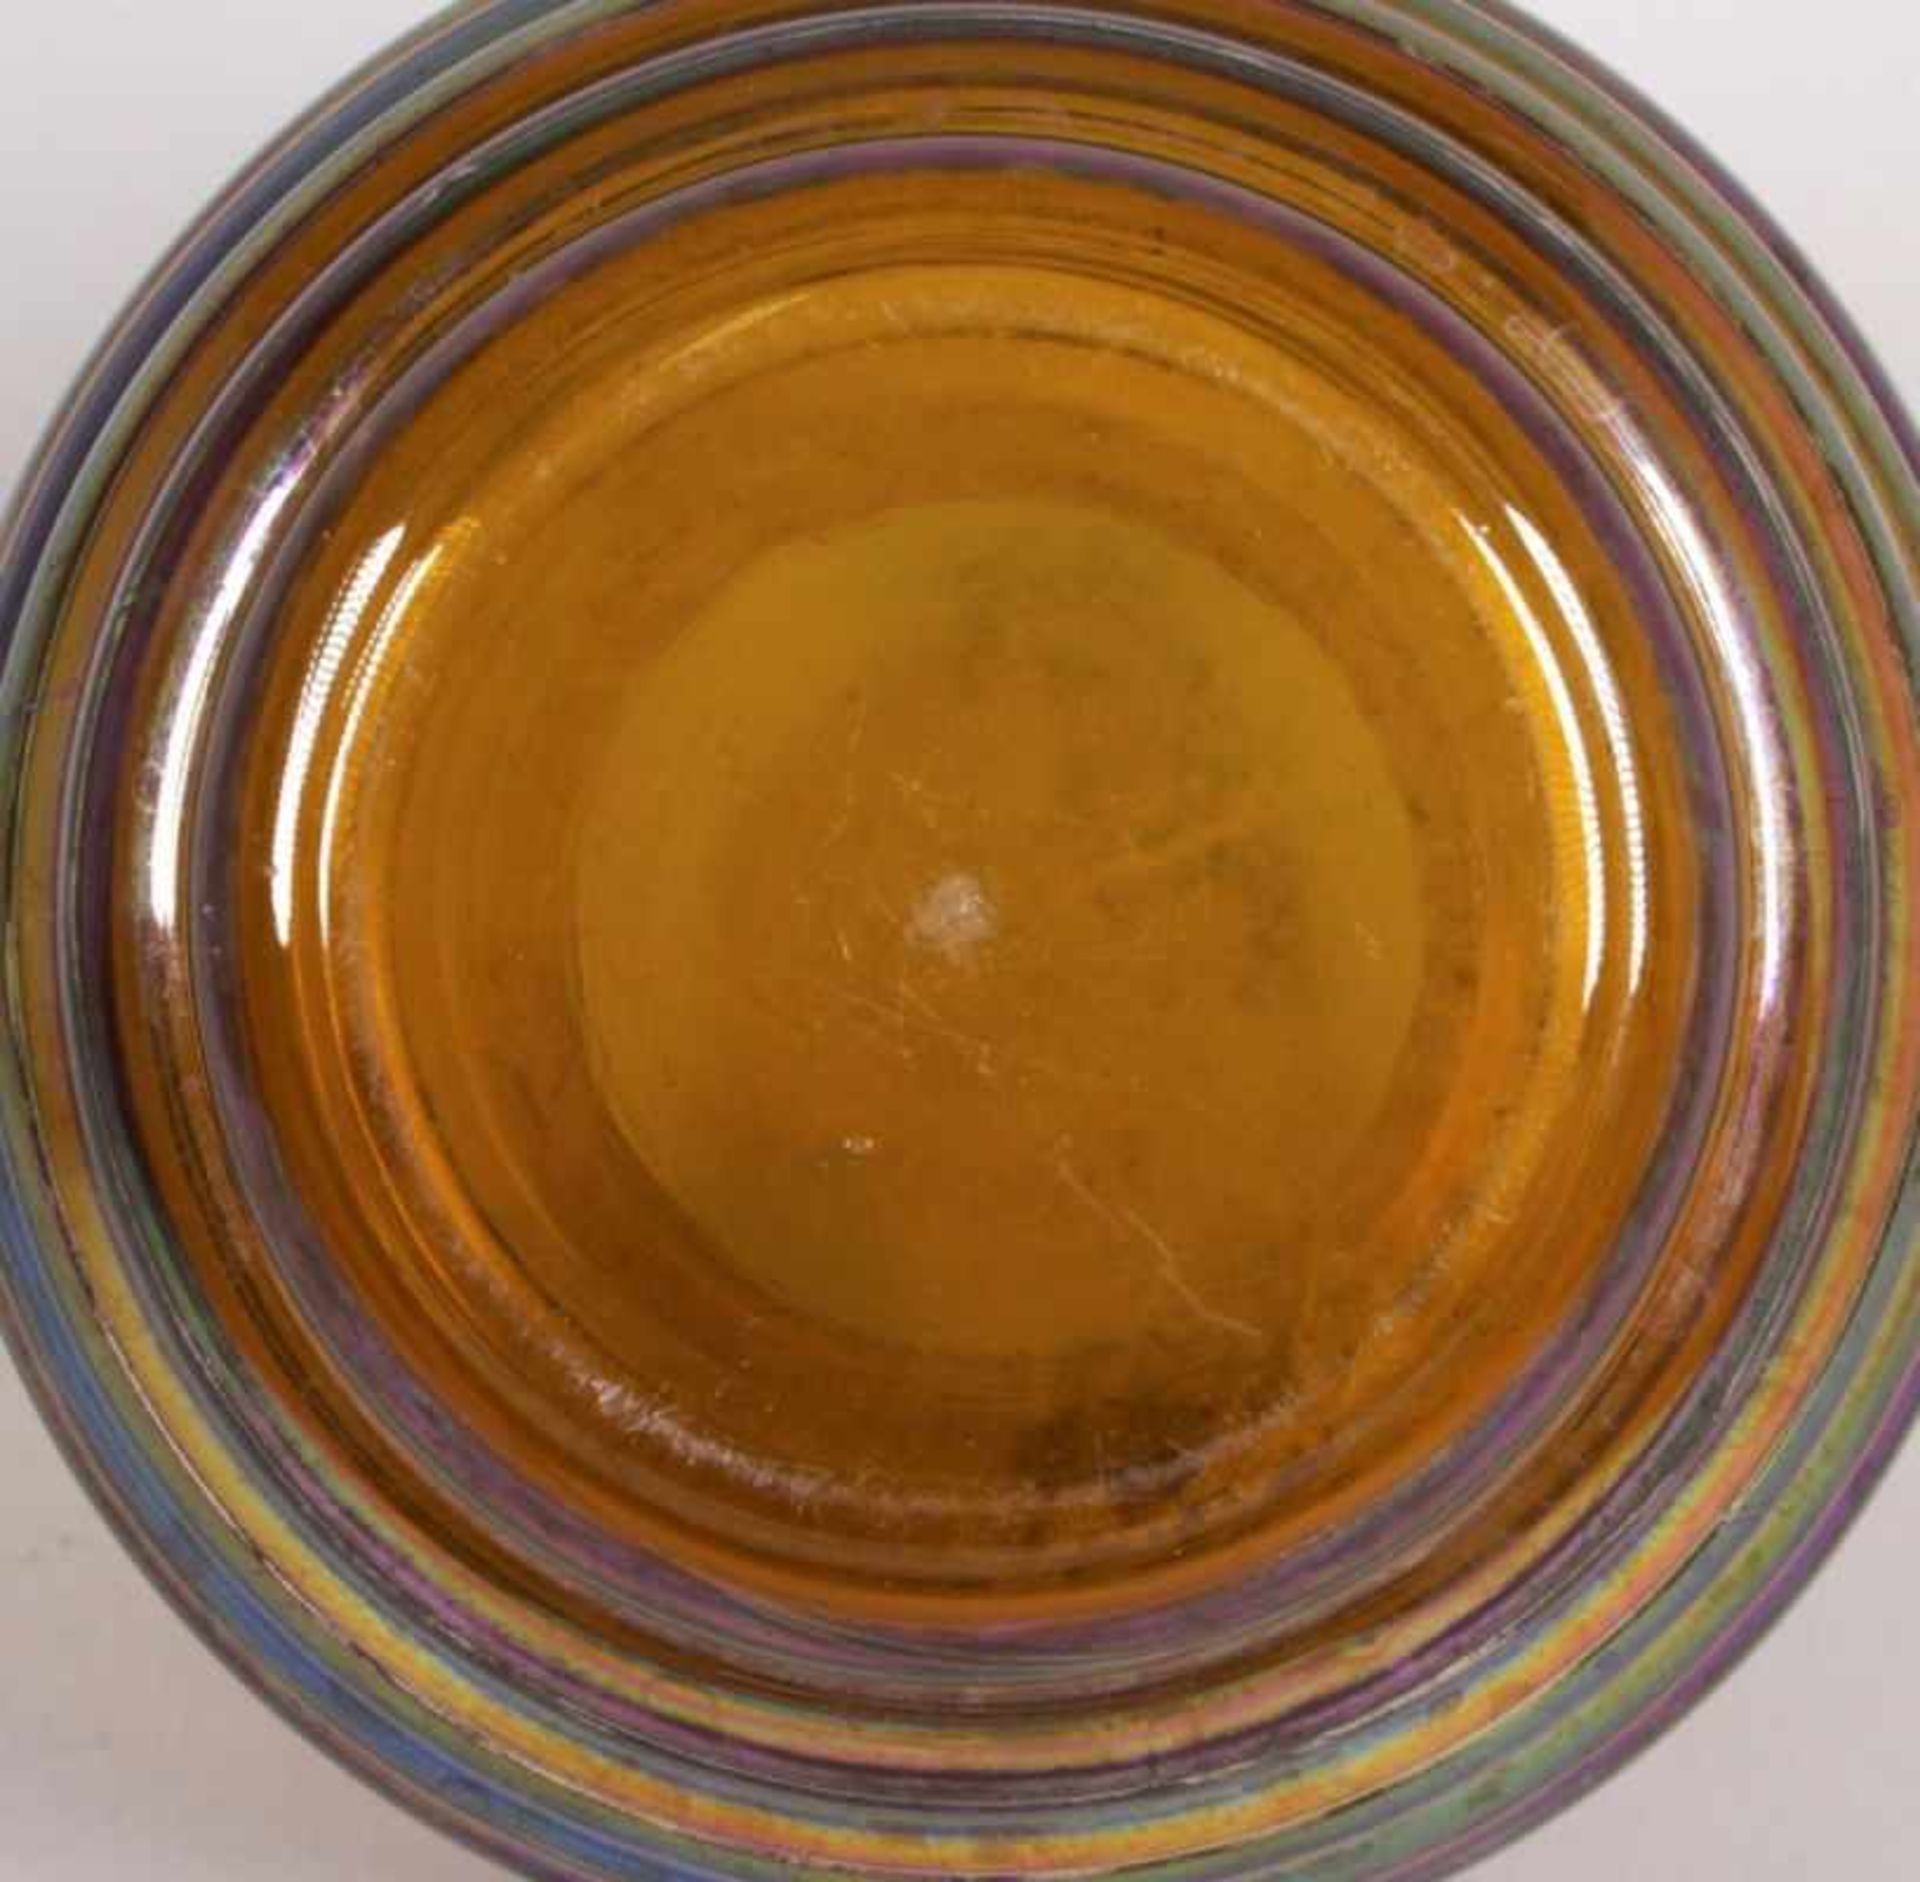 Glas-Ziervase, WMF, Geislingen, 50 Jahre, honiggelbes Glas, horizontal gerippt,Außenwandung in den - Bild 2 aus 2